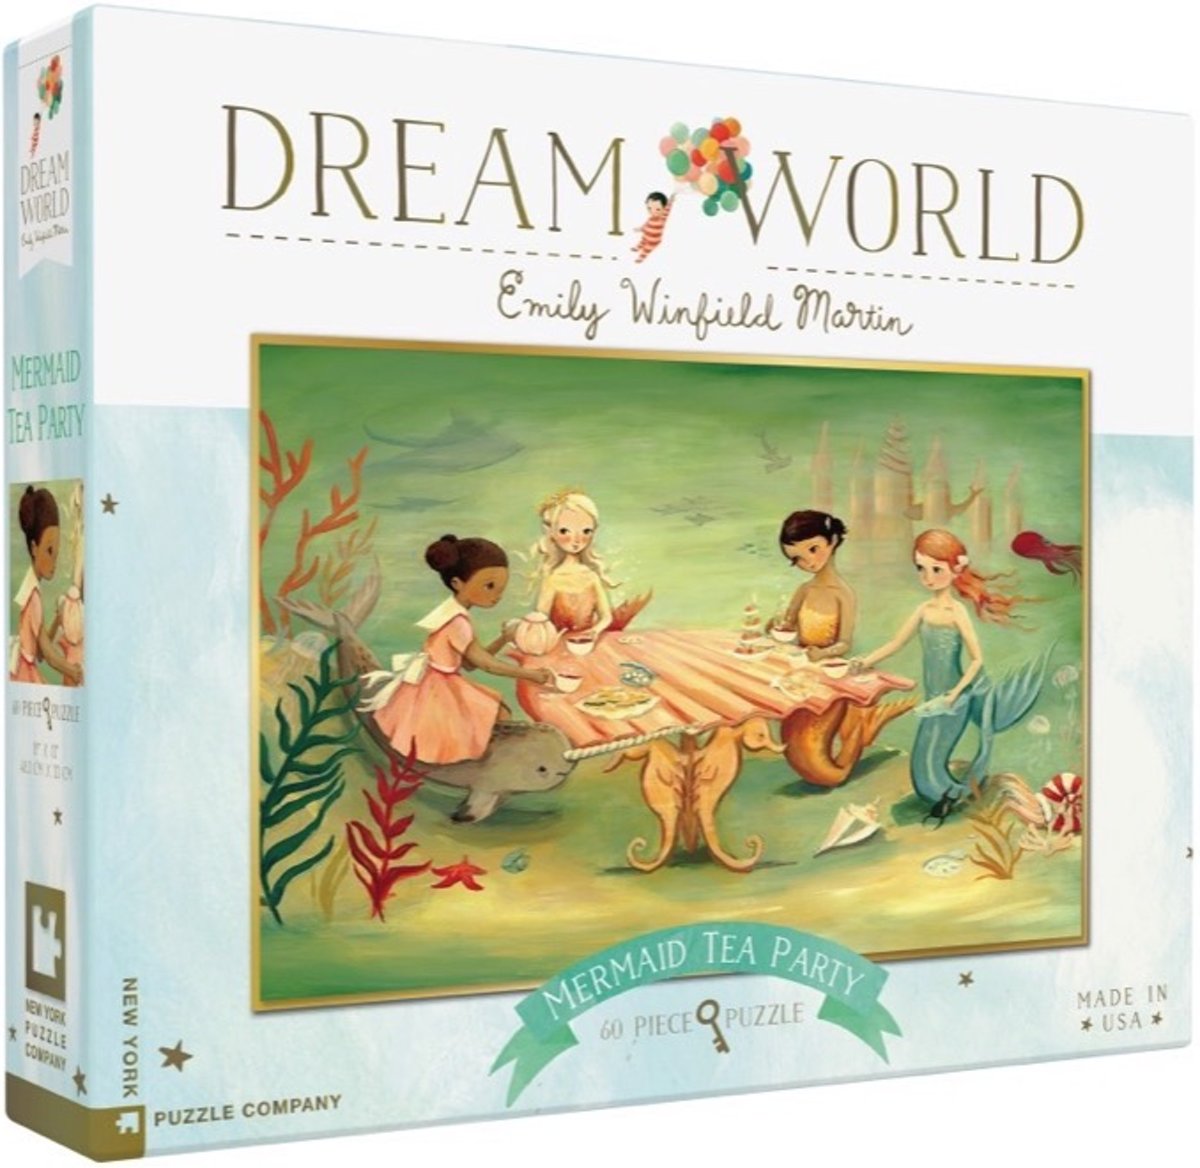 Mermaid Tea Party - NYPC Dream World Collectie Puzzel 60 Stukjes